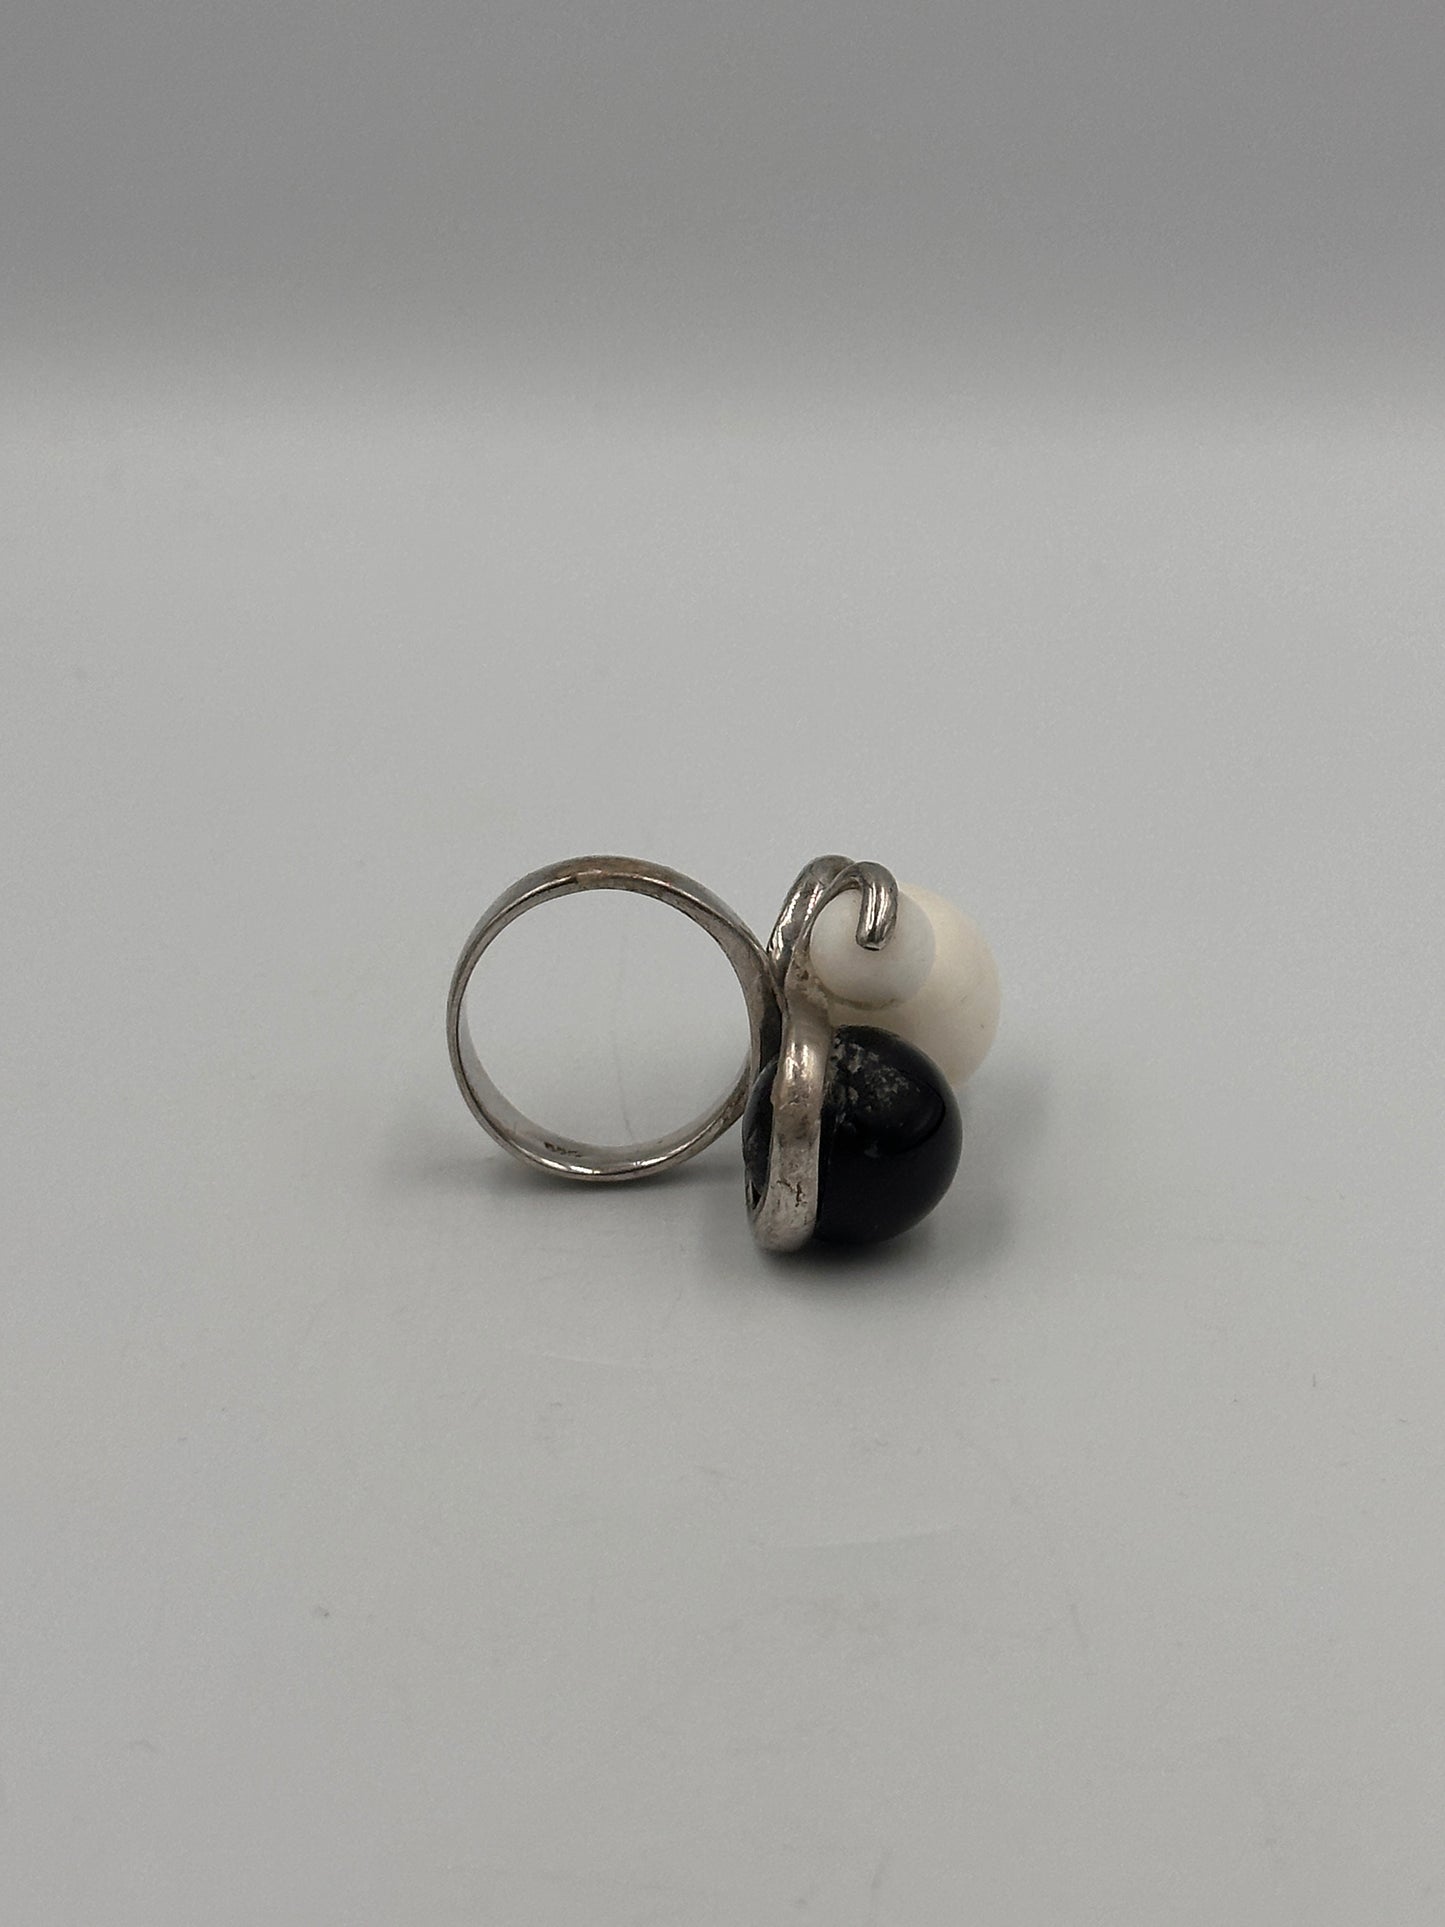 Vintage Silber 925 Ring mit Schwarz-Weißen Perlen